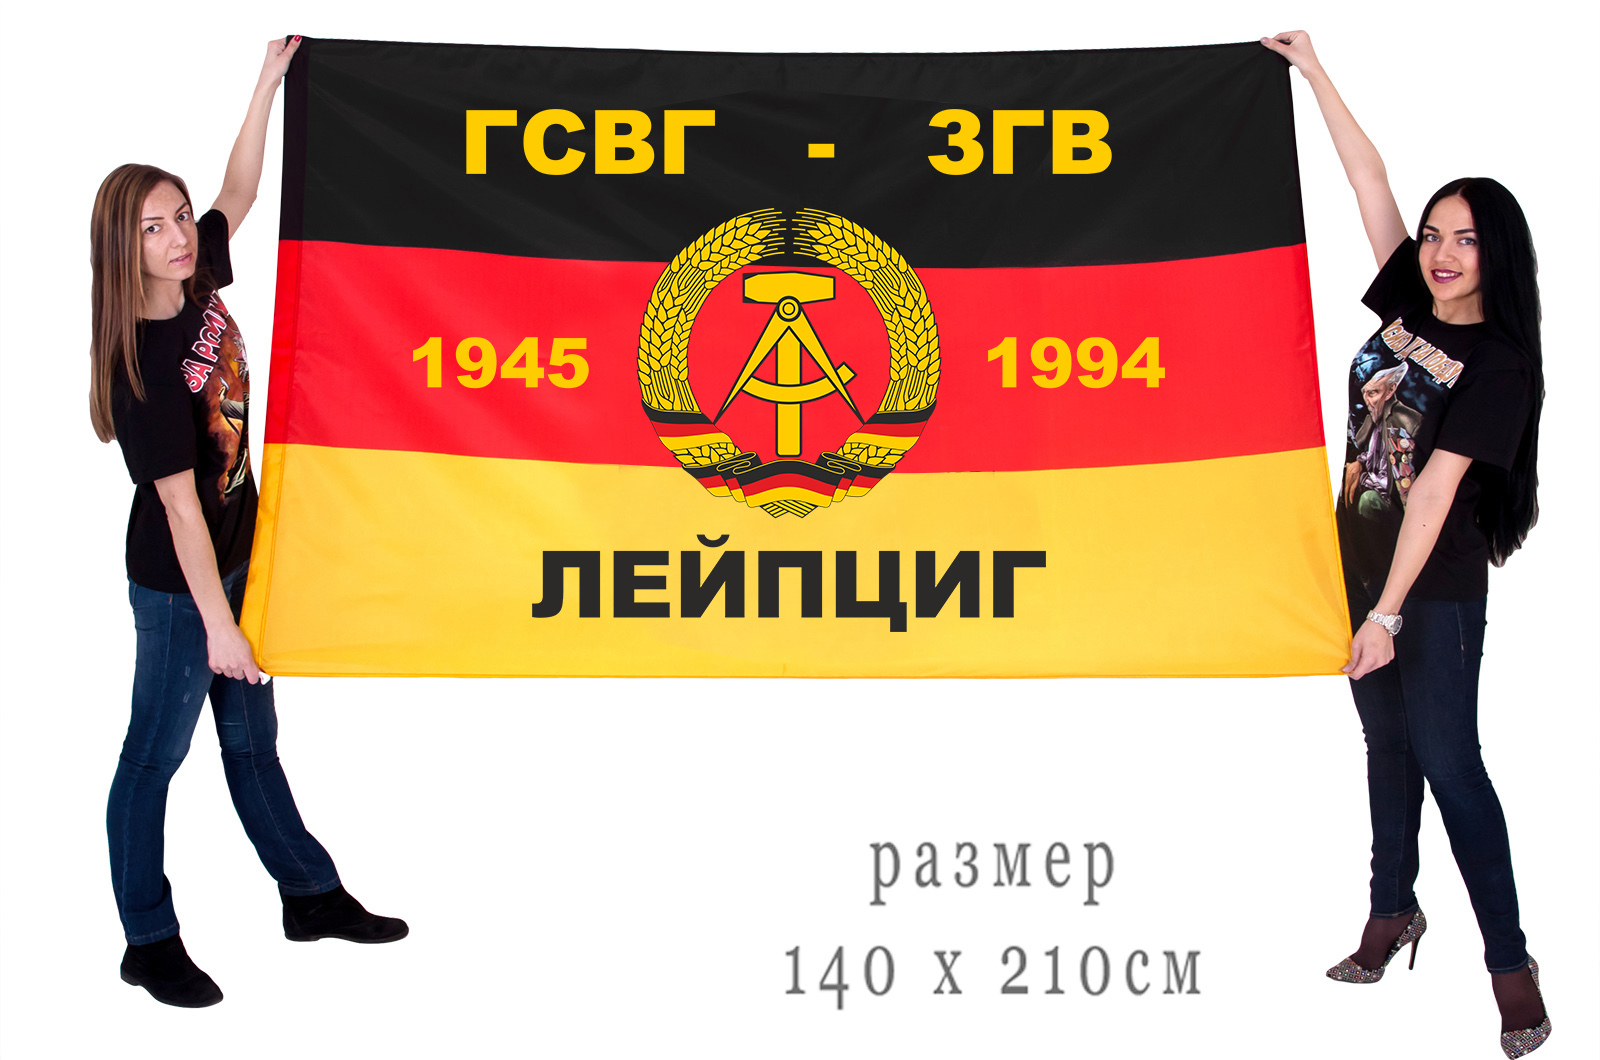 Большой флаг ГСВГ-ЗГВ "Лейпциг" 1945-1994